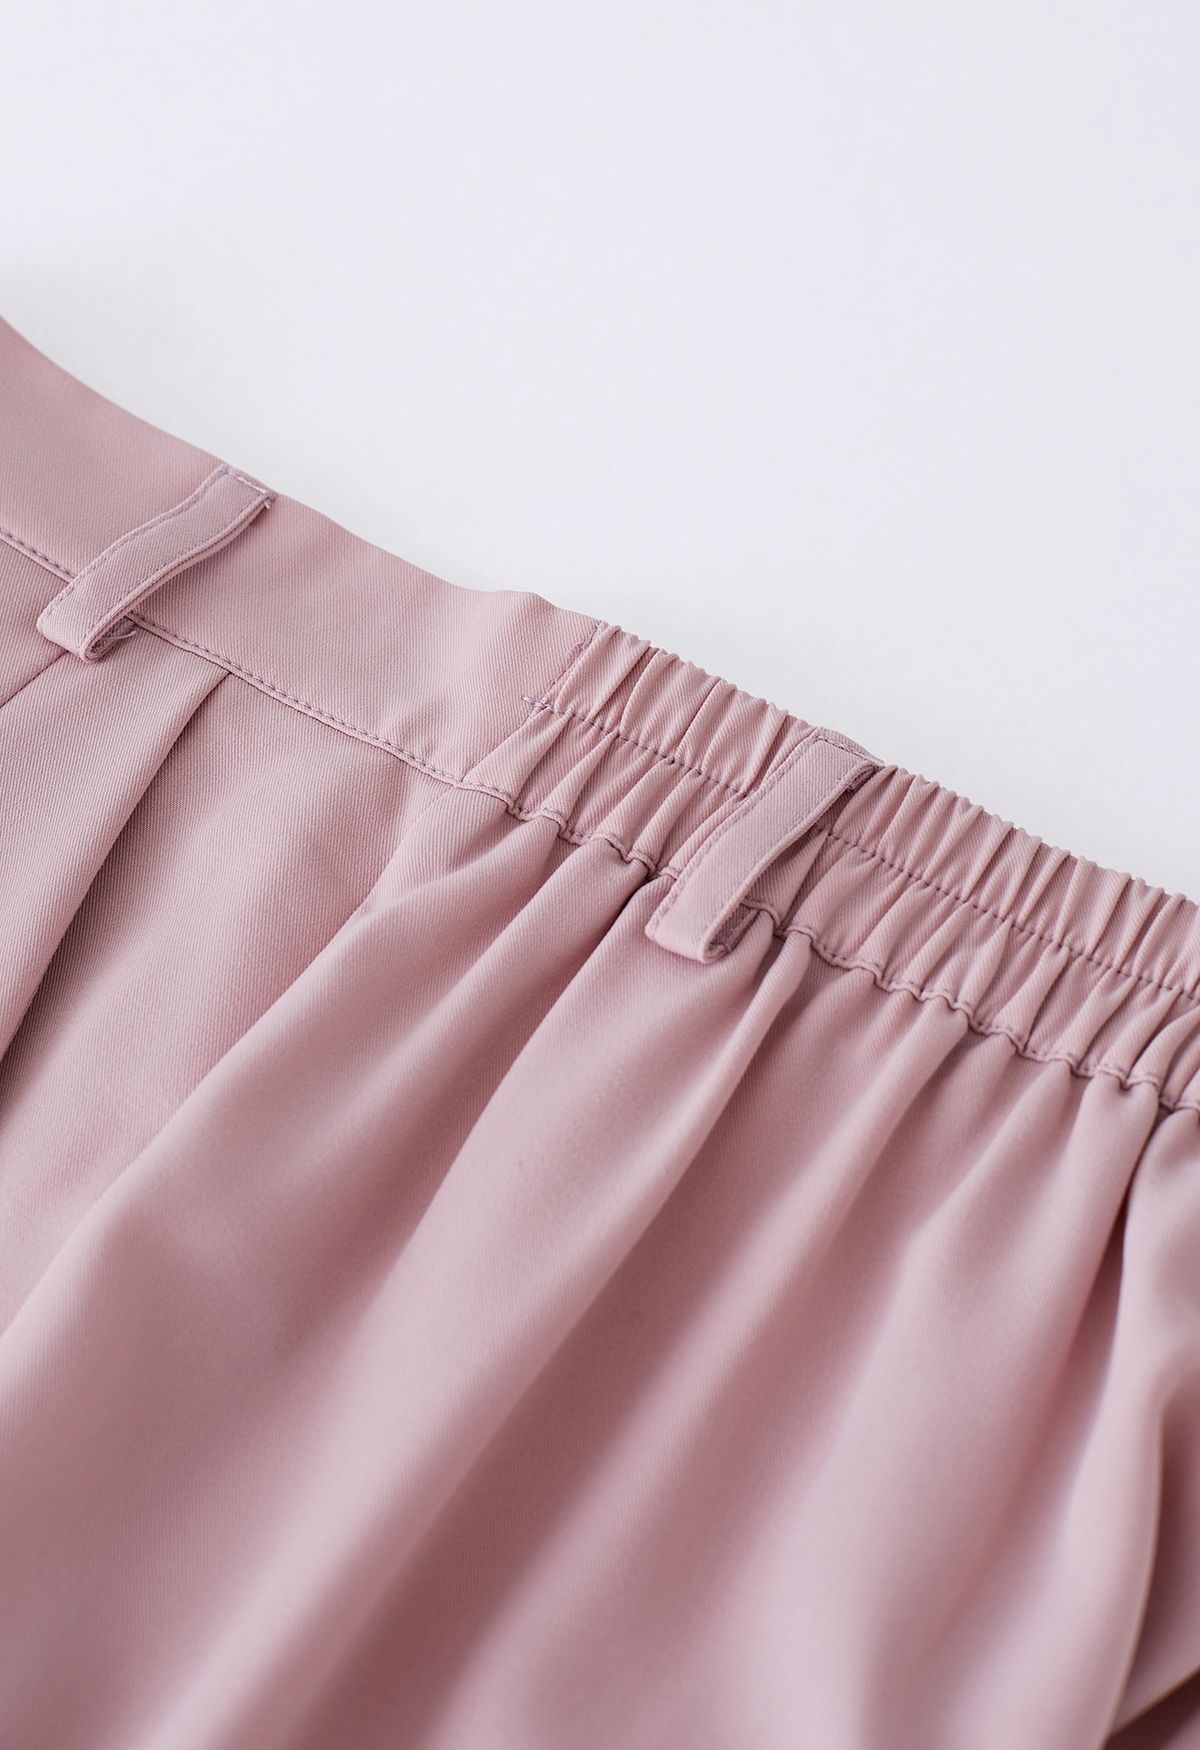 Shorts con bolsillos laterales y detalles plisados en rosa